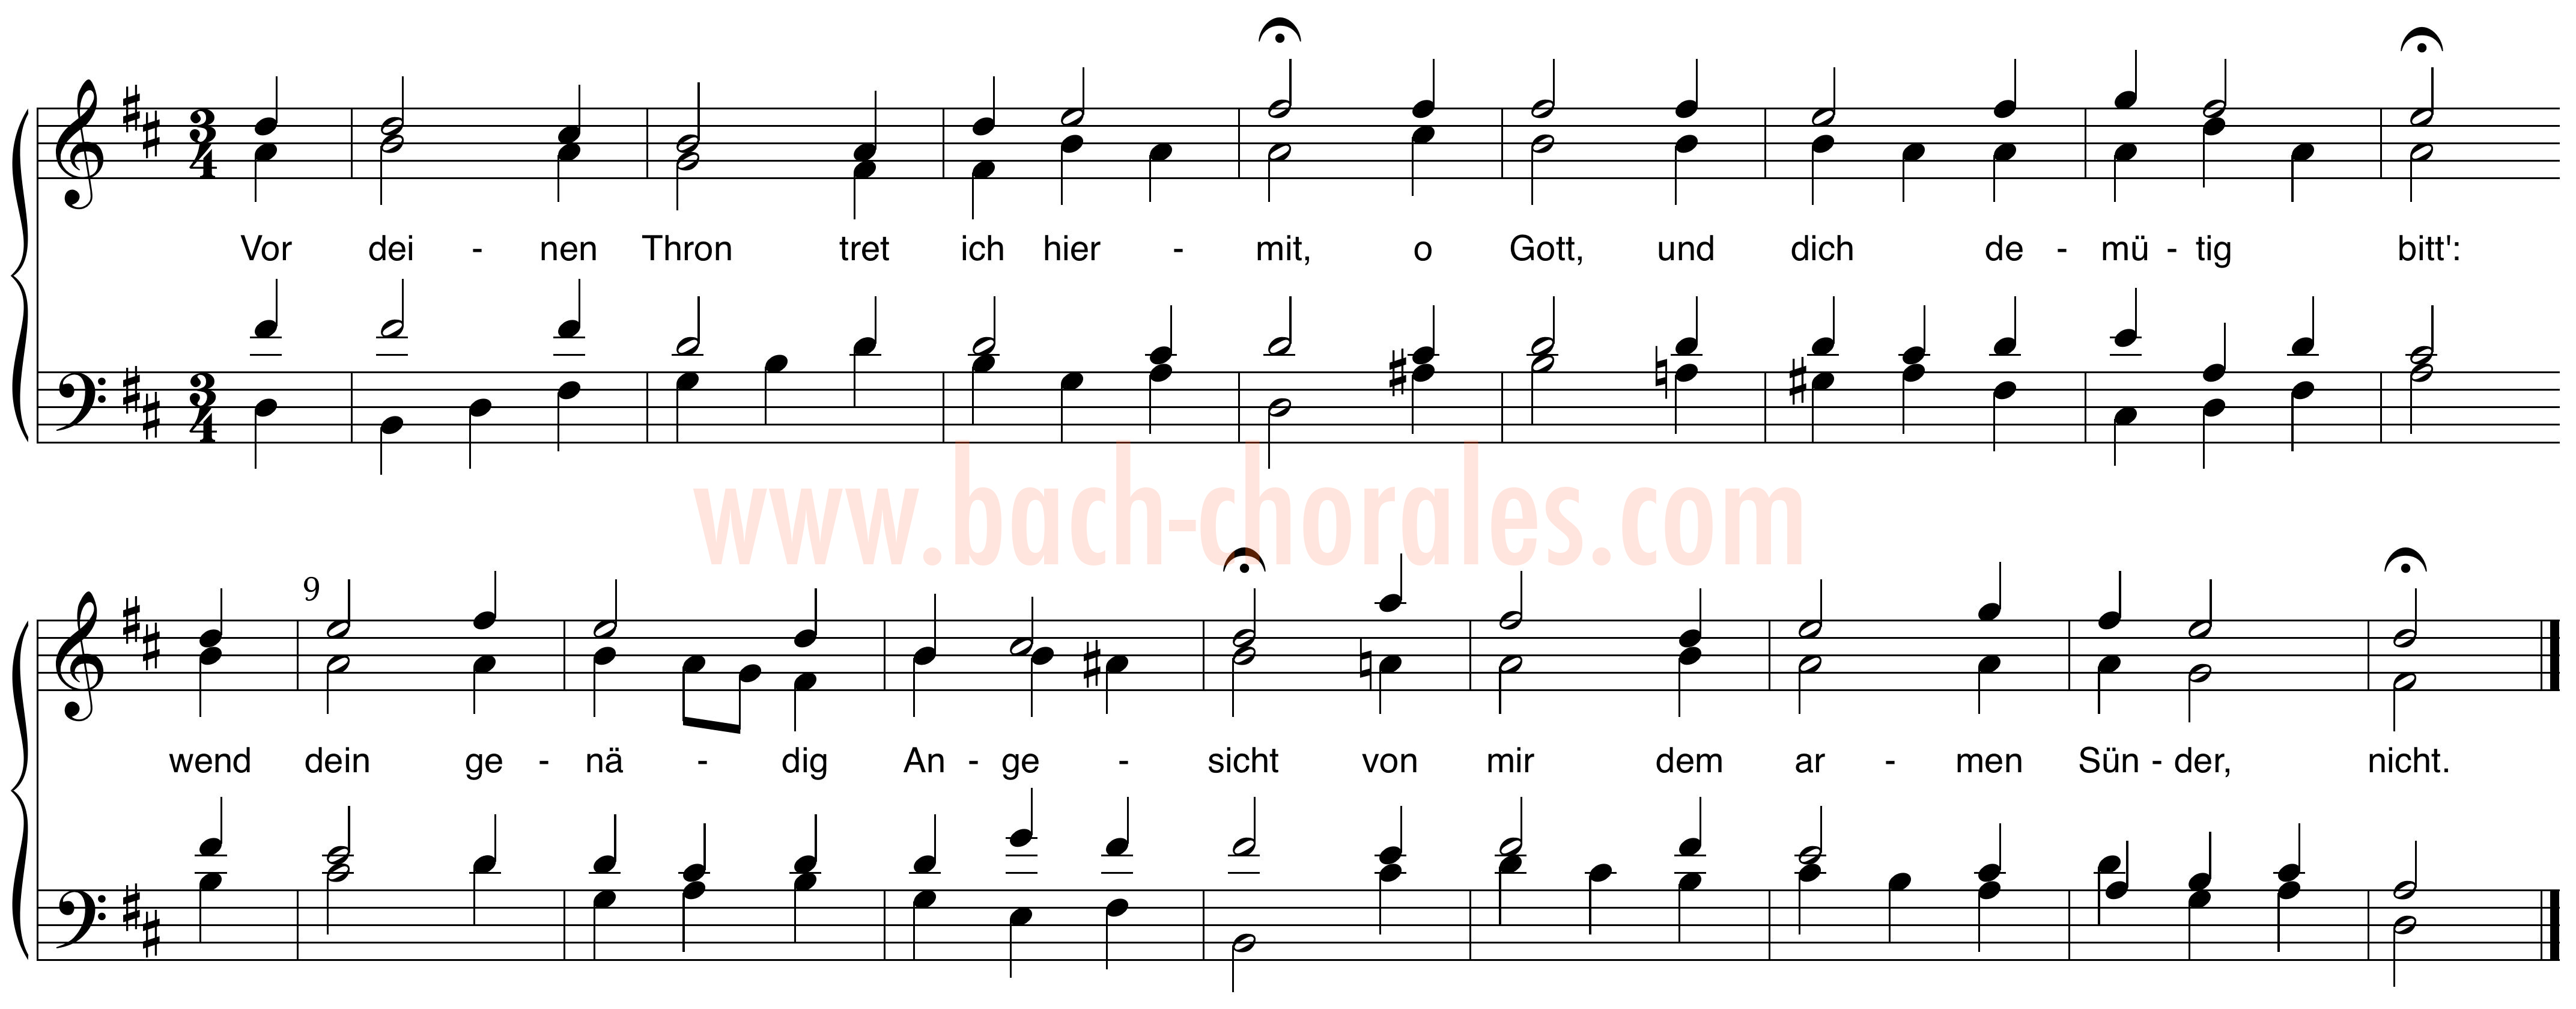 notenbeeld BWV 327 op https://www.bach-chorales.com/